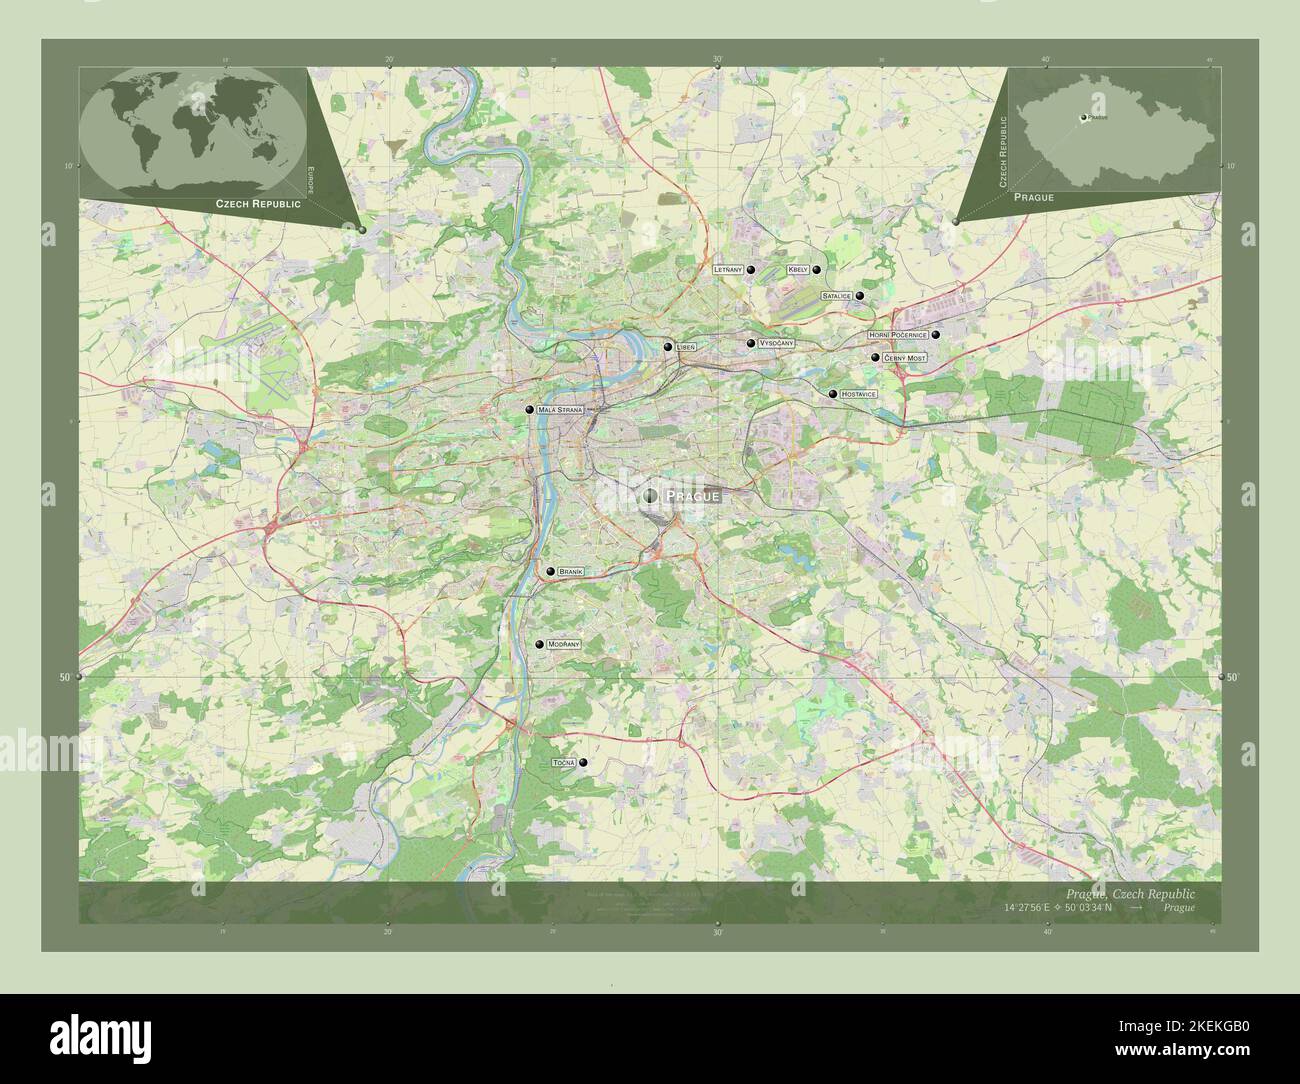 Prag, Region der Tschechischen Republik. Öffnen Sie Die Straßenkarte. Orte und Namen der wichtigsten Städte der Region. Karten für zusätzliche Eckposition Stockfoto